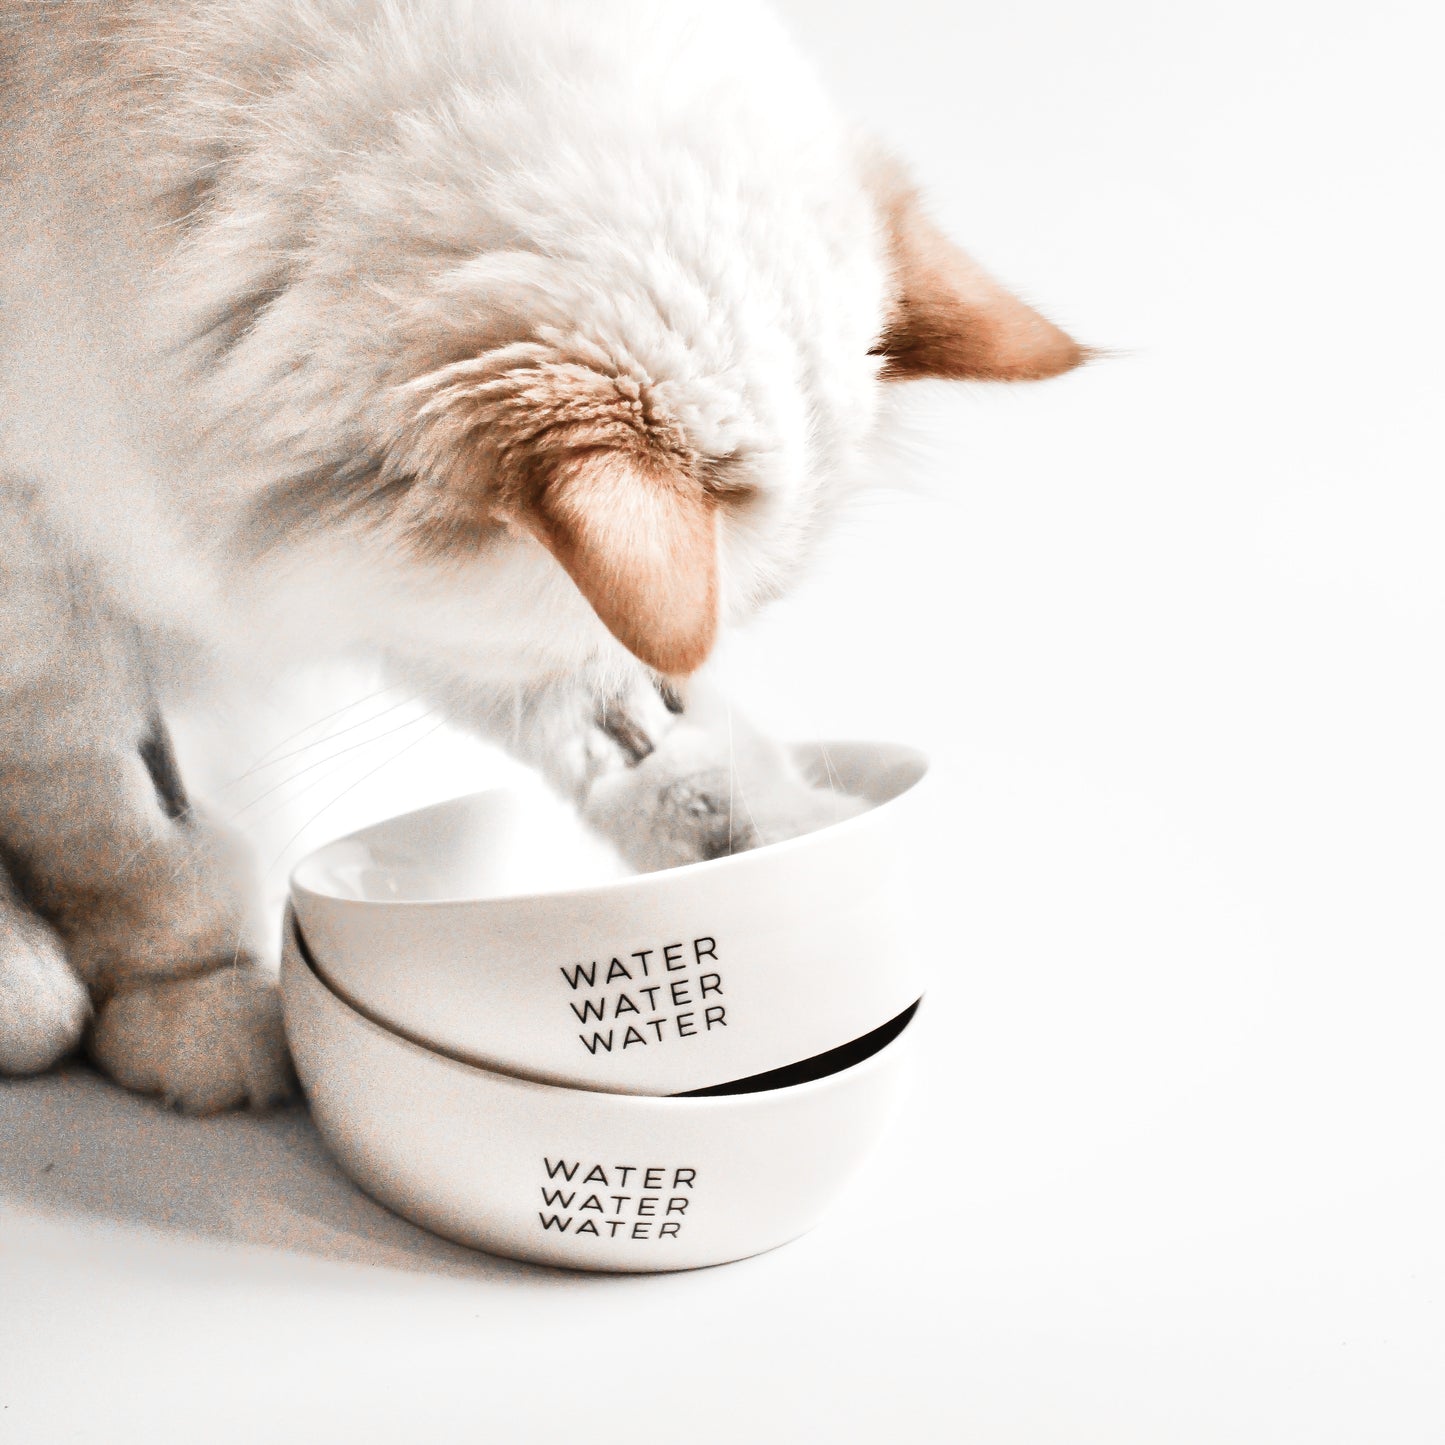 Eine Katze mit langem Fell steckt ihre Pfote in zwei ineinander gestapelten weißen Keramiknäpfen mit dem Aufdruck "water water water".